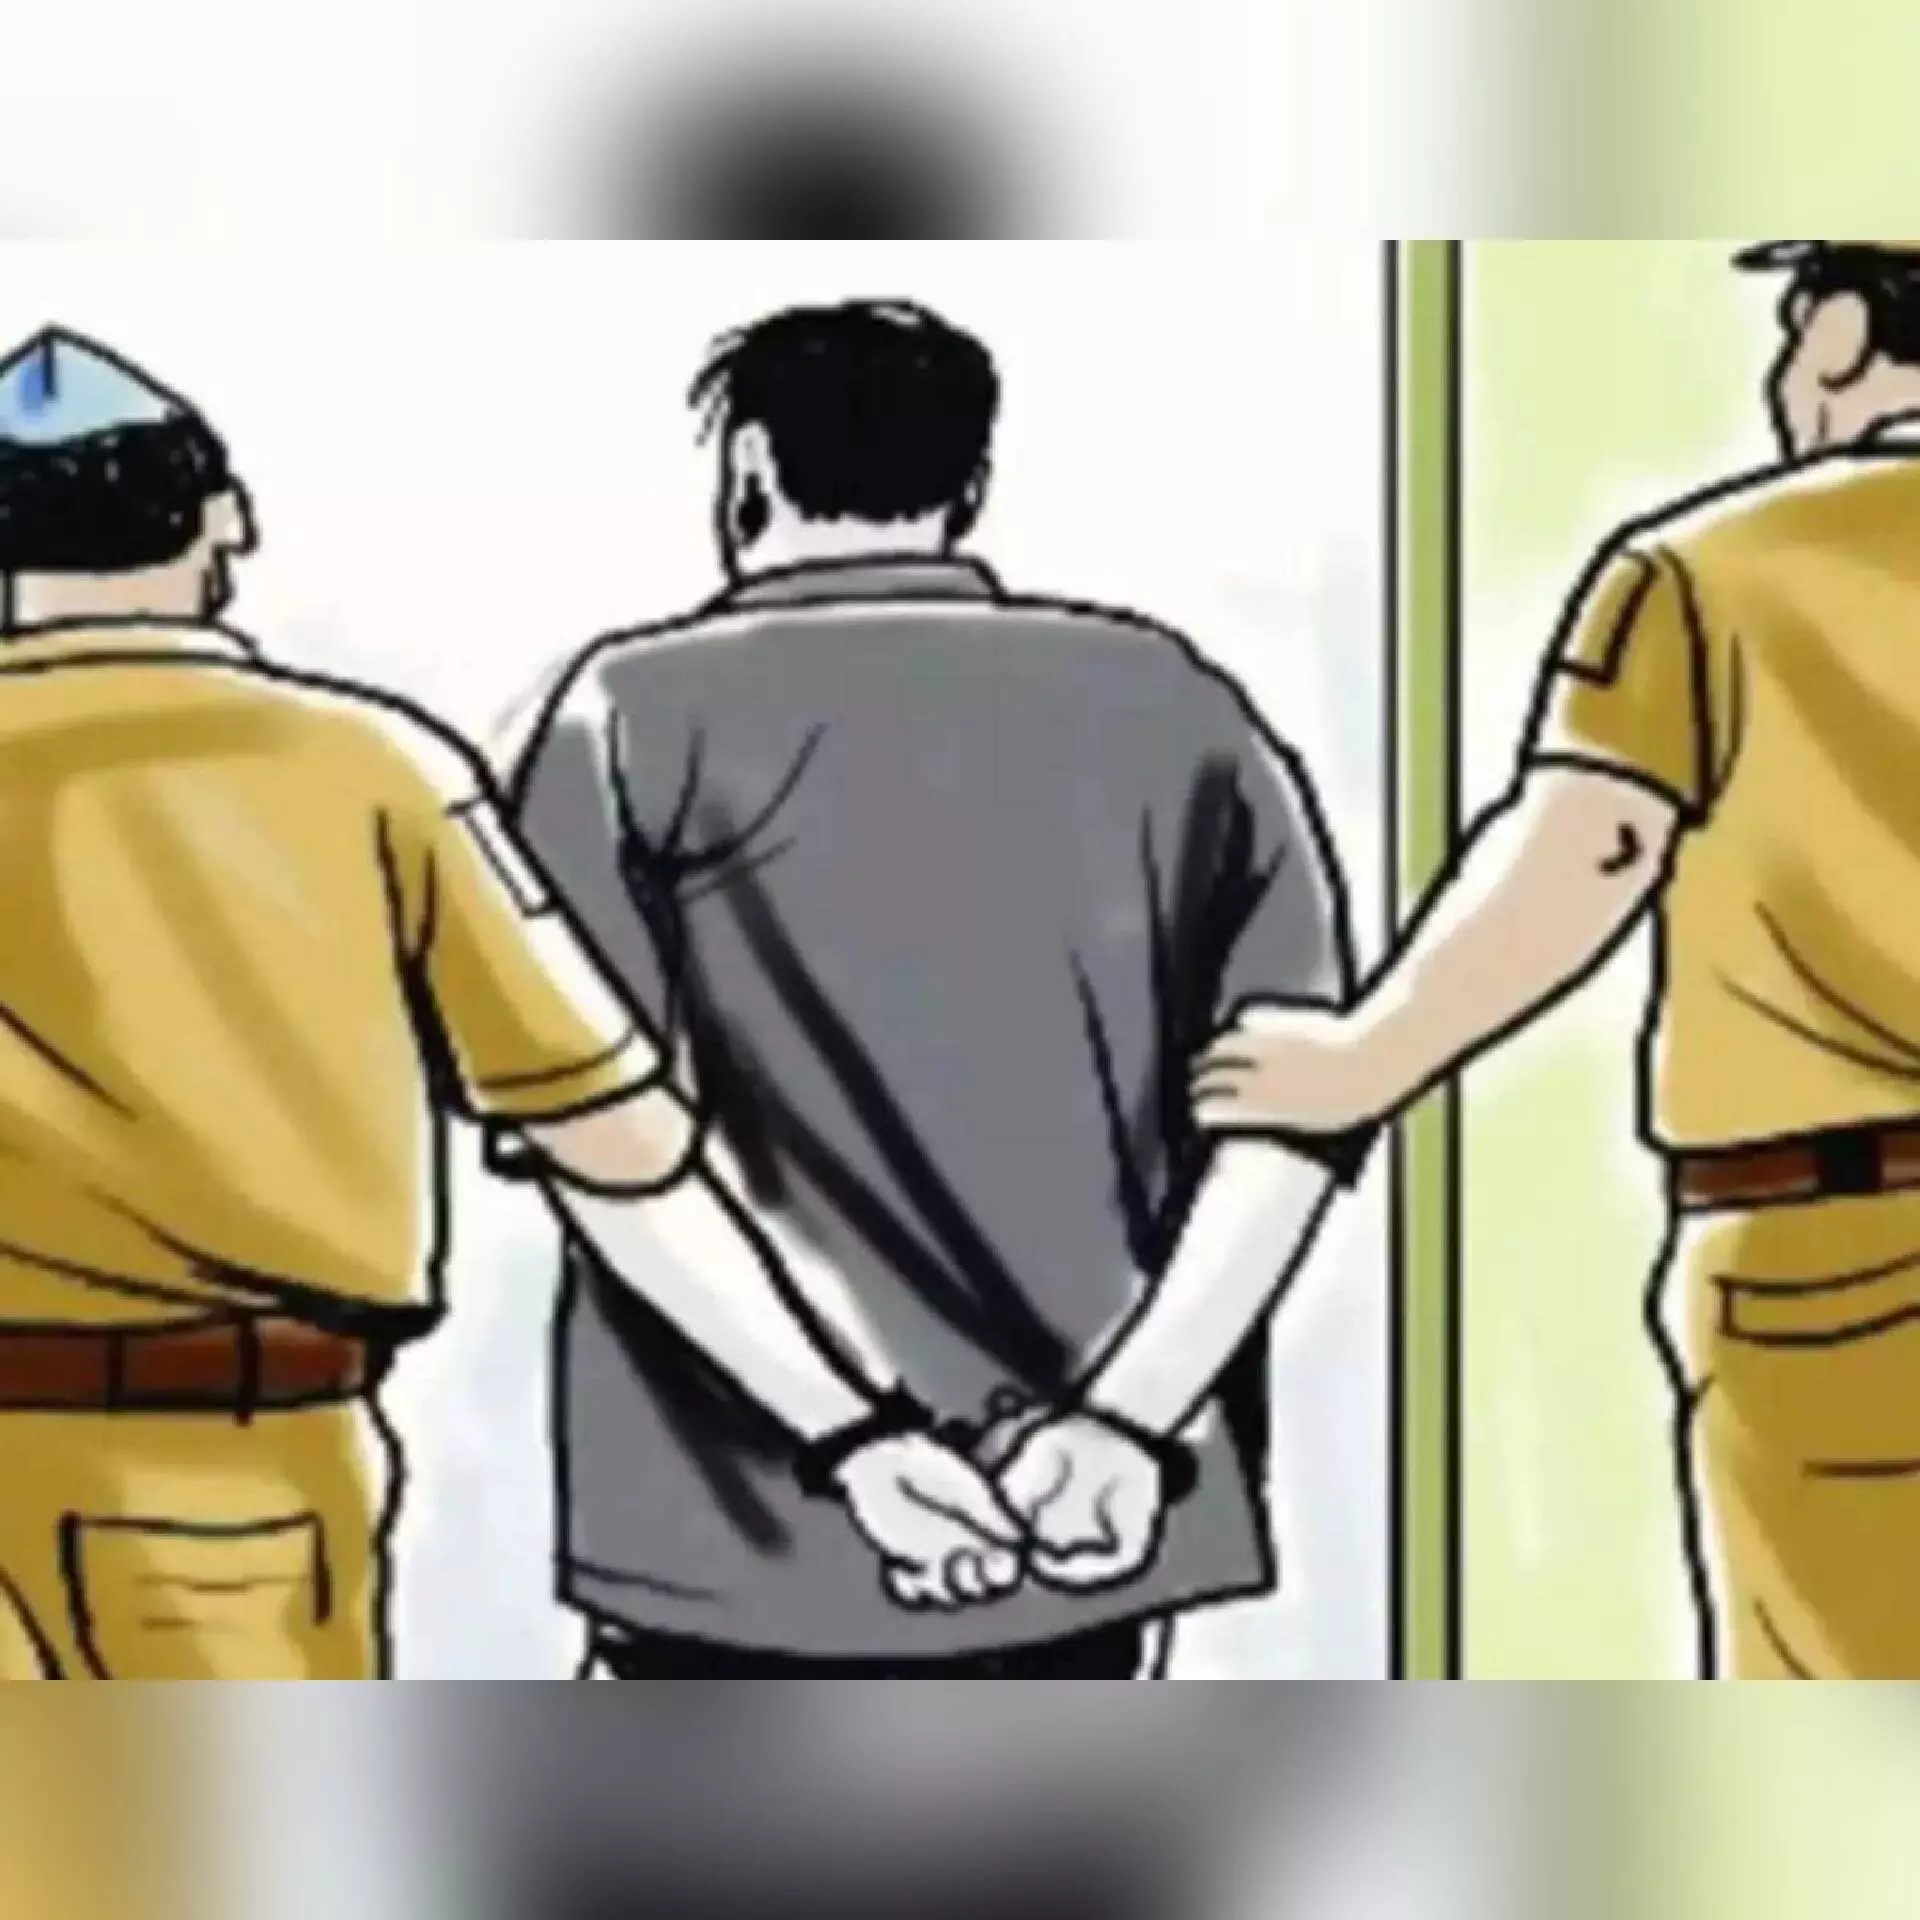 बच्चों का अपहरण कर बेचने वाले अंतरराज्यीय गैंग का भंडाफोड़, बिहार-झारखंड तक फैला है नेटवर्क, 1 गिरफ्तार